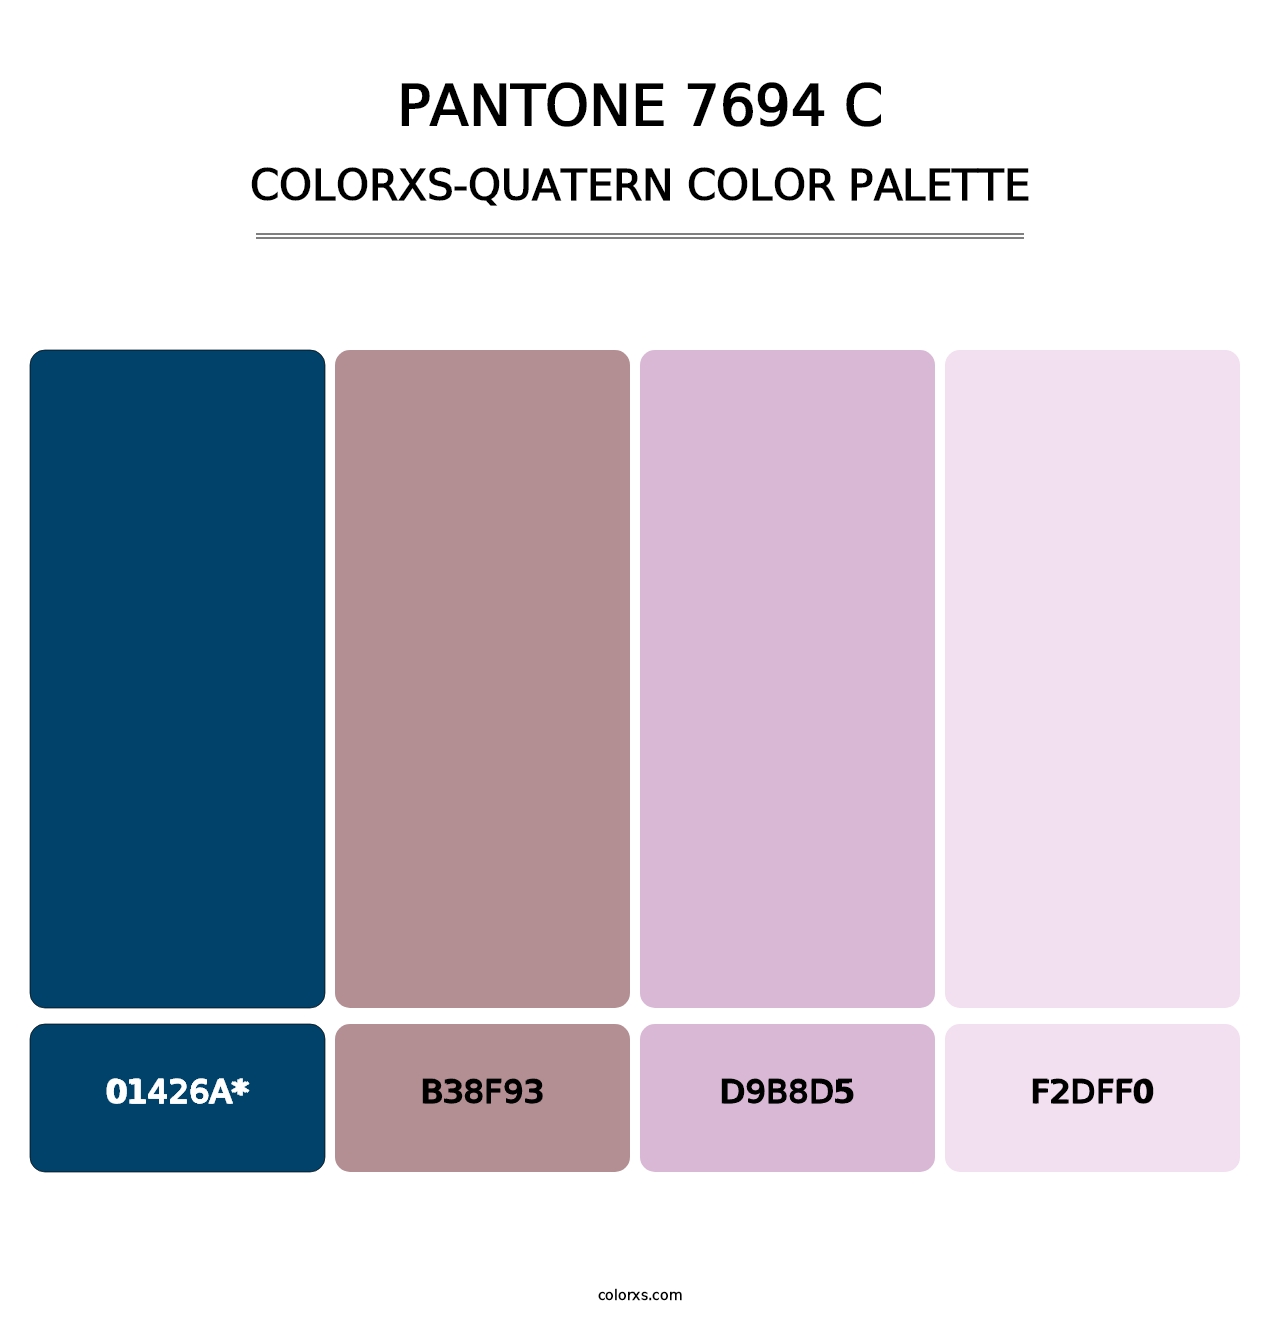 PANTONE 7694 C - Colorxs Quatern Palette